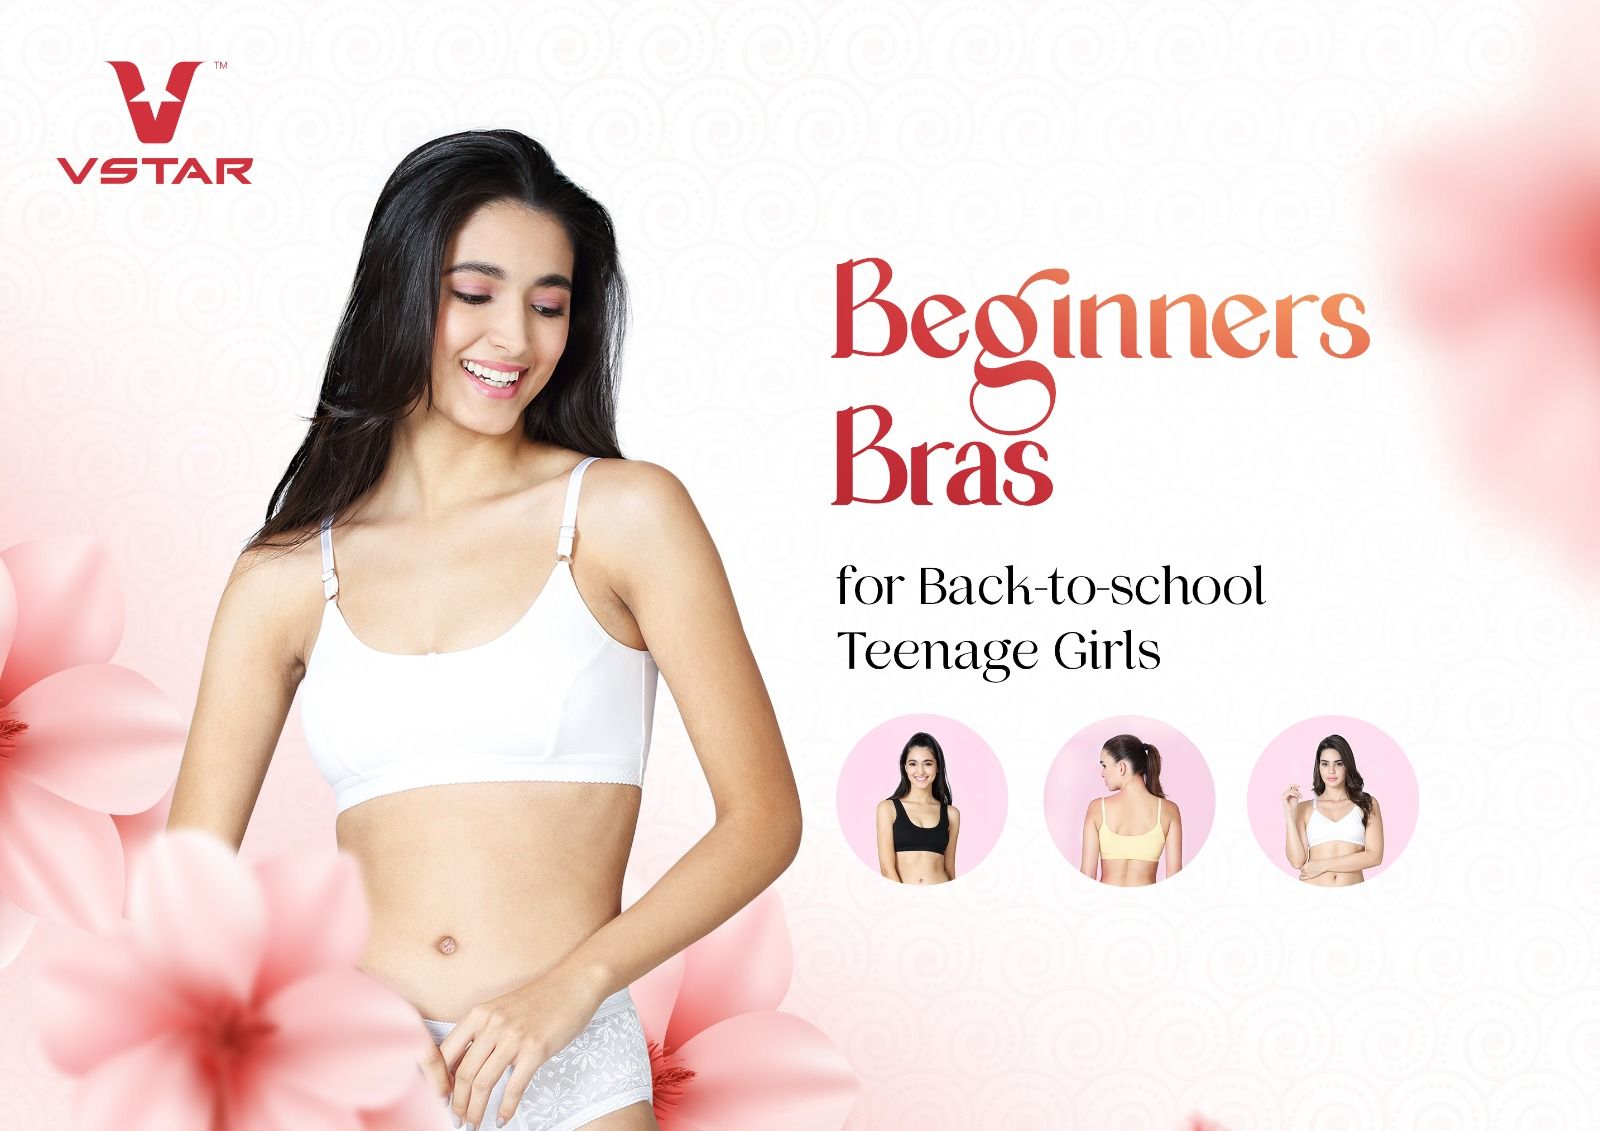 Bra care tips - How to make your bras last longer